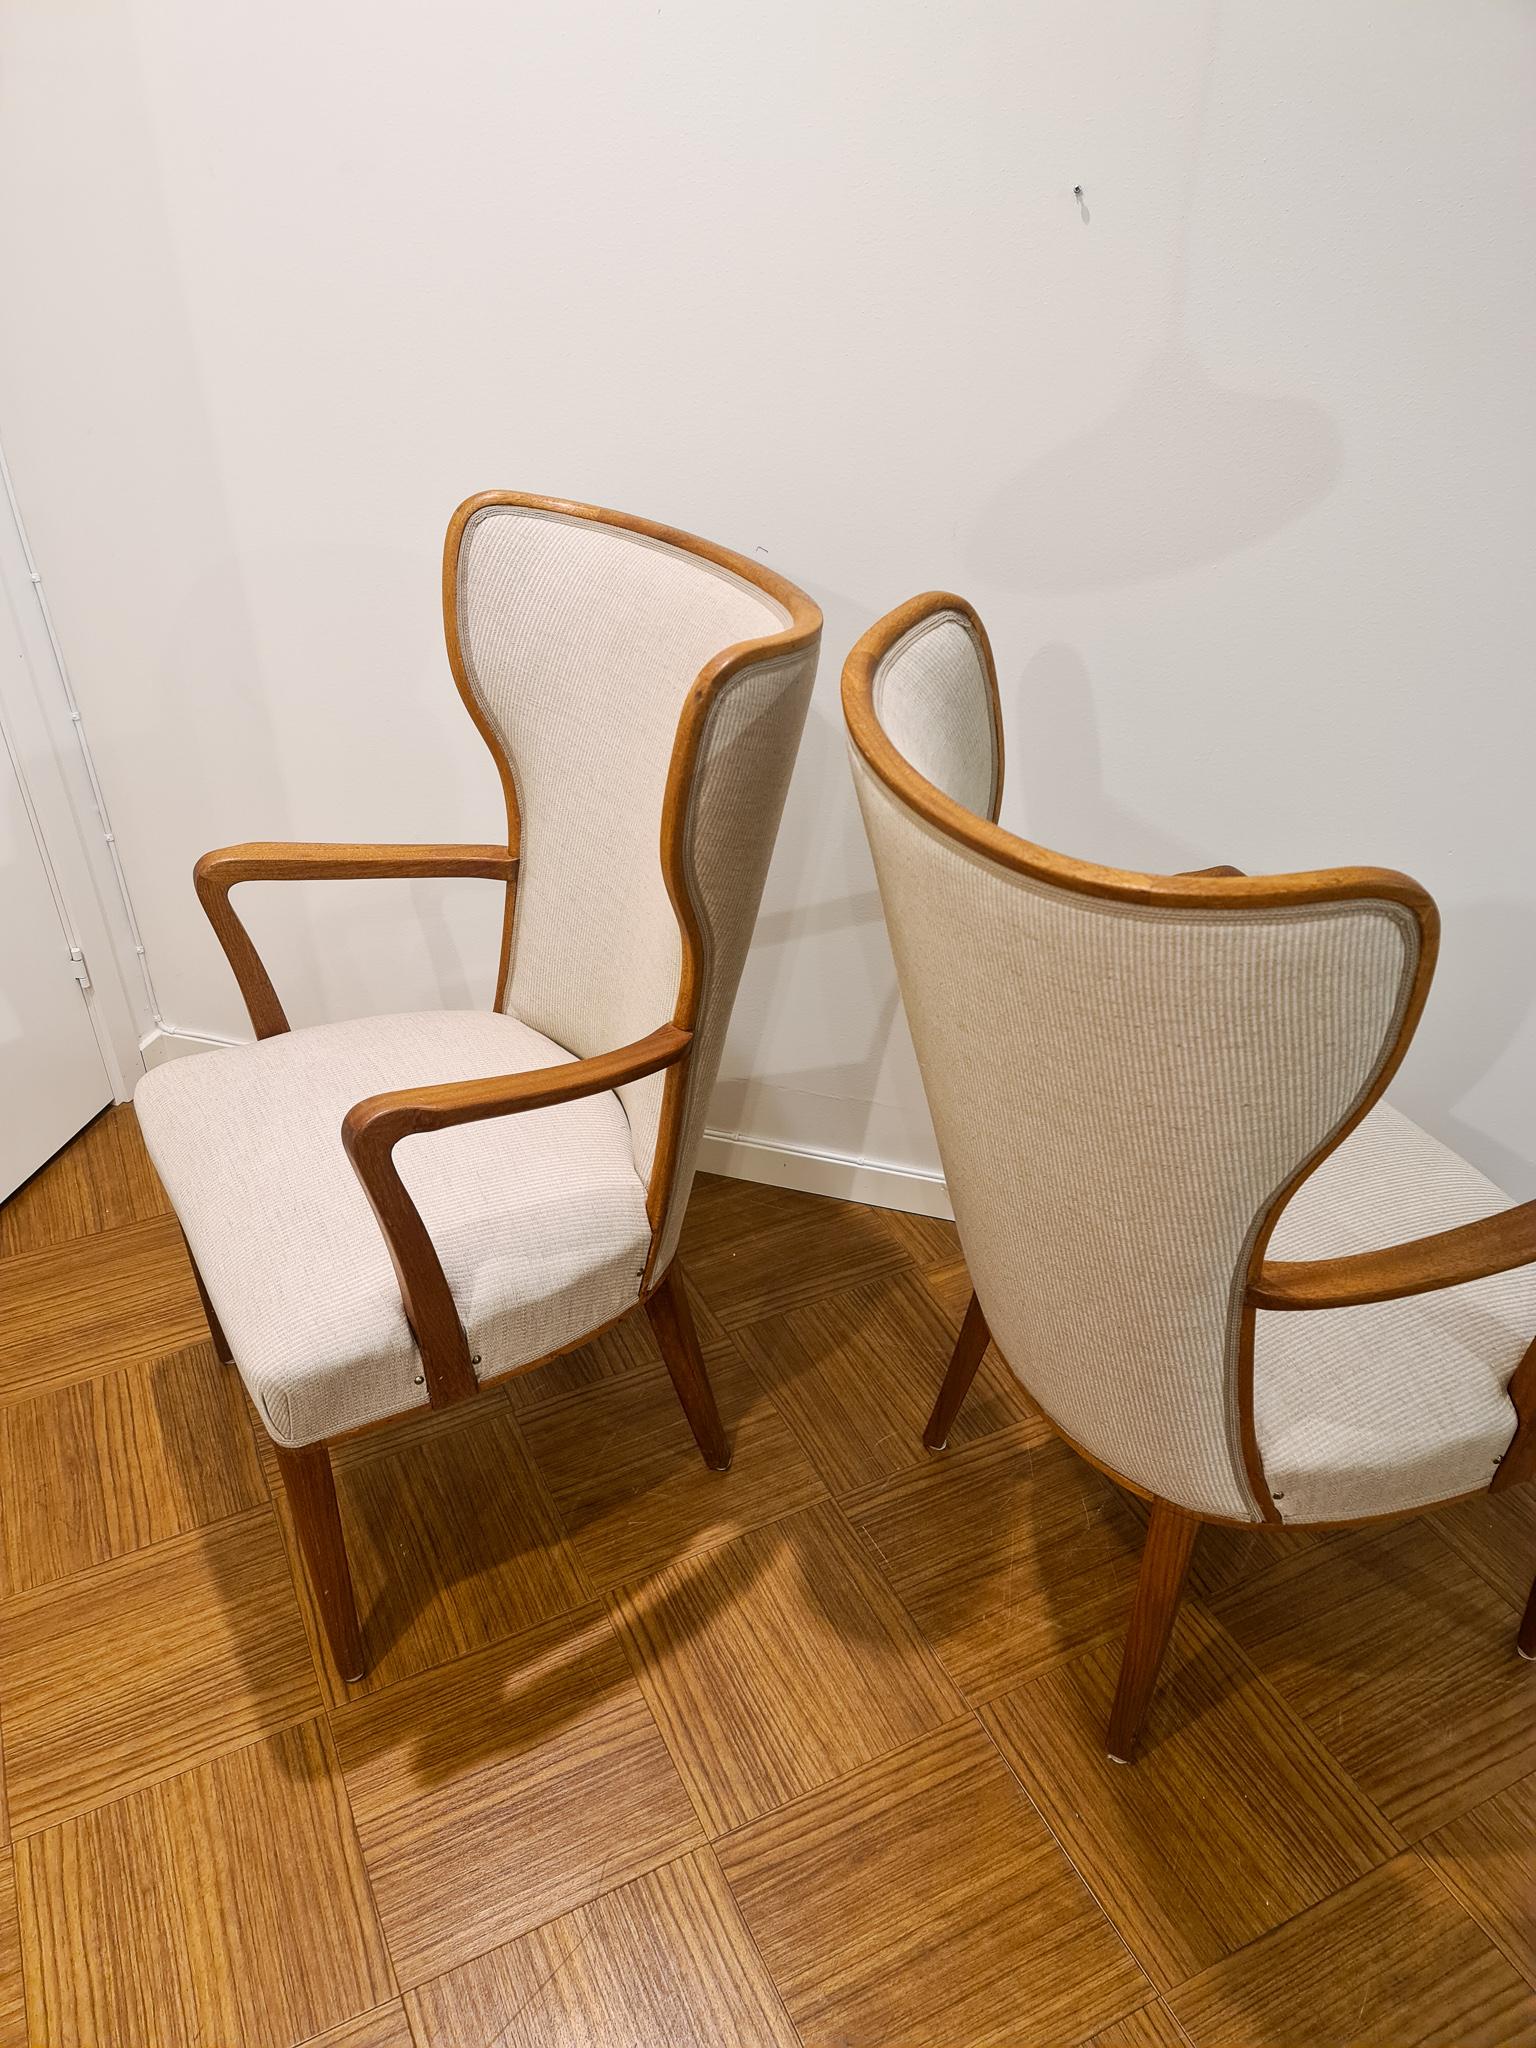 Mid-20th Century Art Deco Lounge Chairs Svenska Kontorsmöbler, Sweden, 1940s For Sale